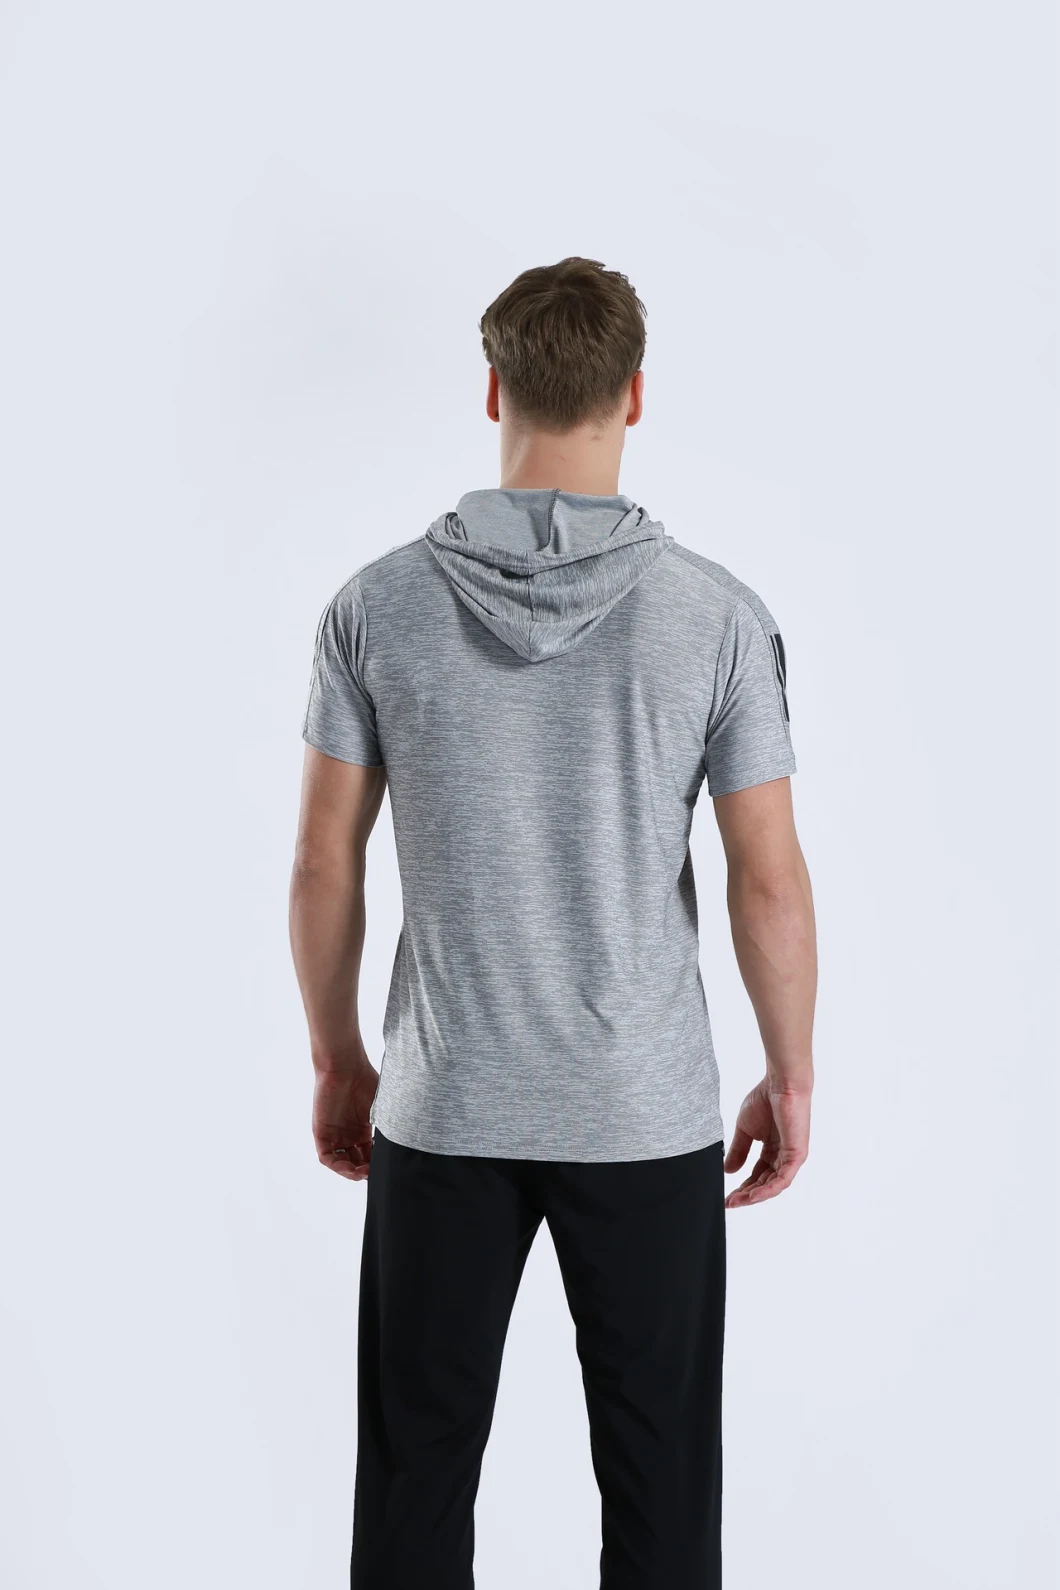 Men Sports Wear Jogging Suit T Shirts Tracksuit Hoodies for Men Clothes